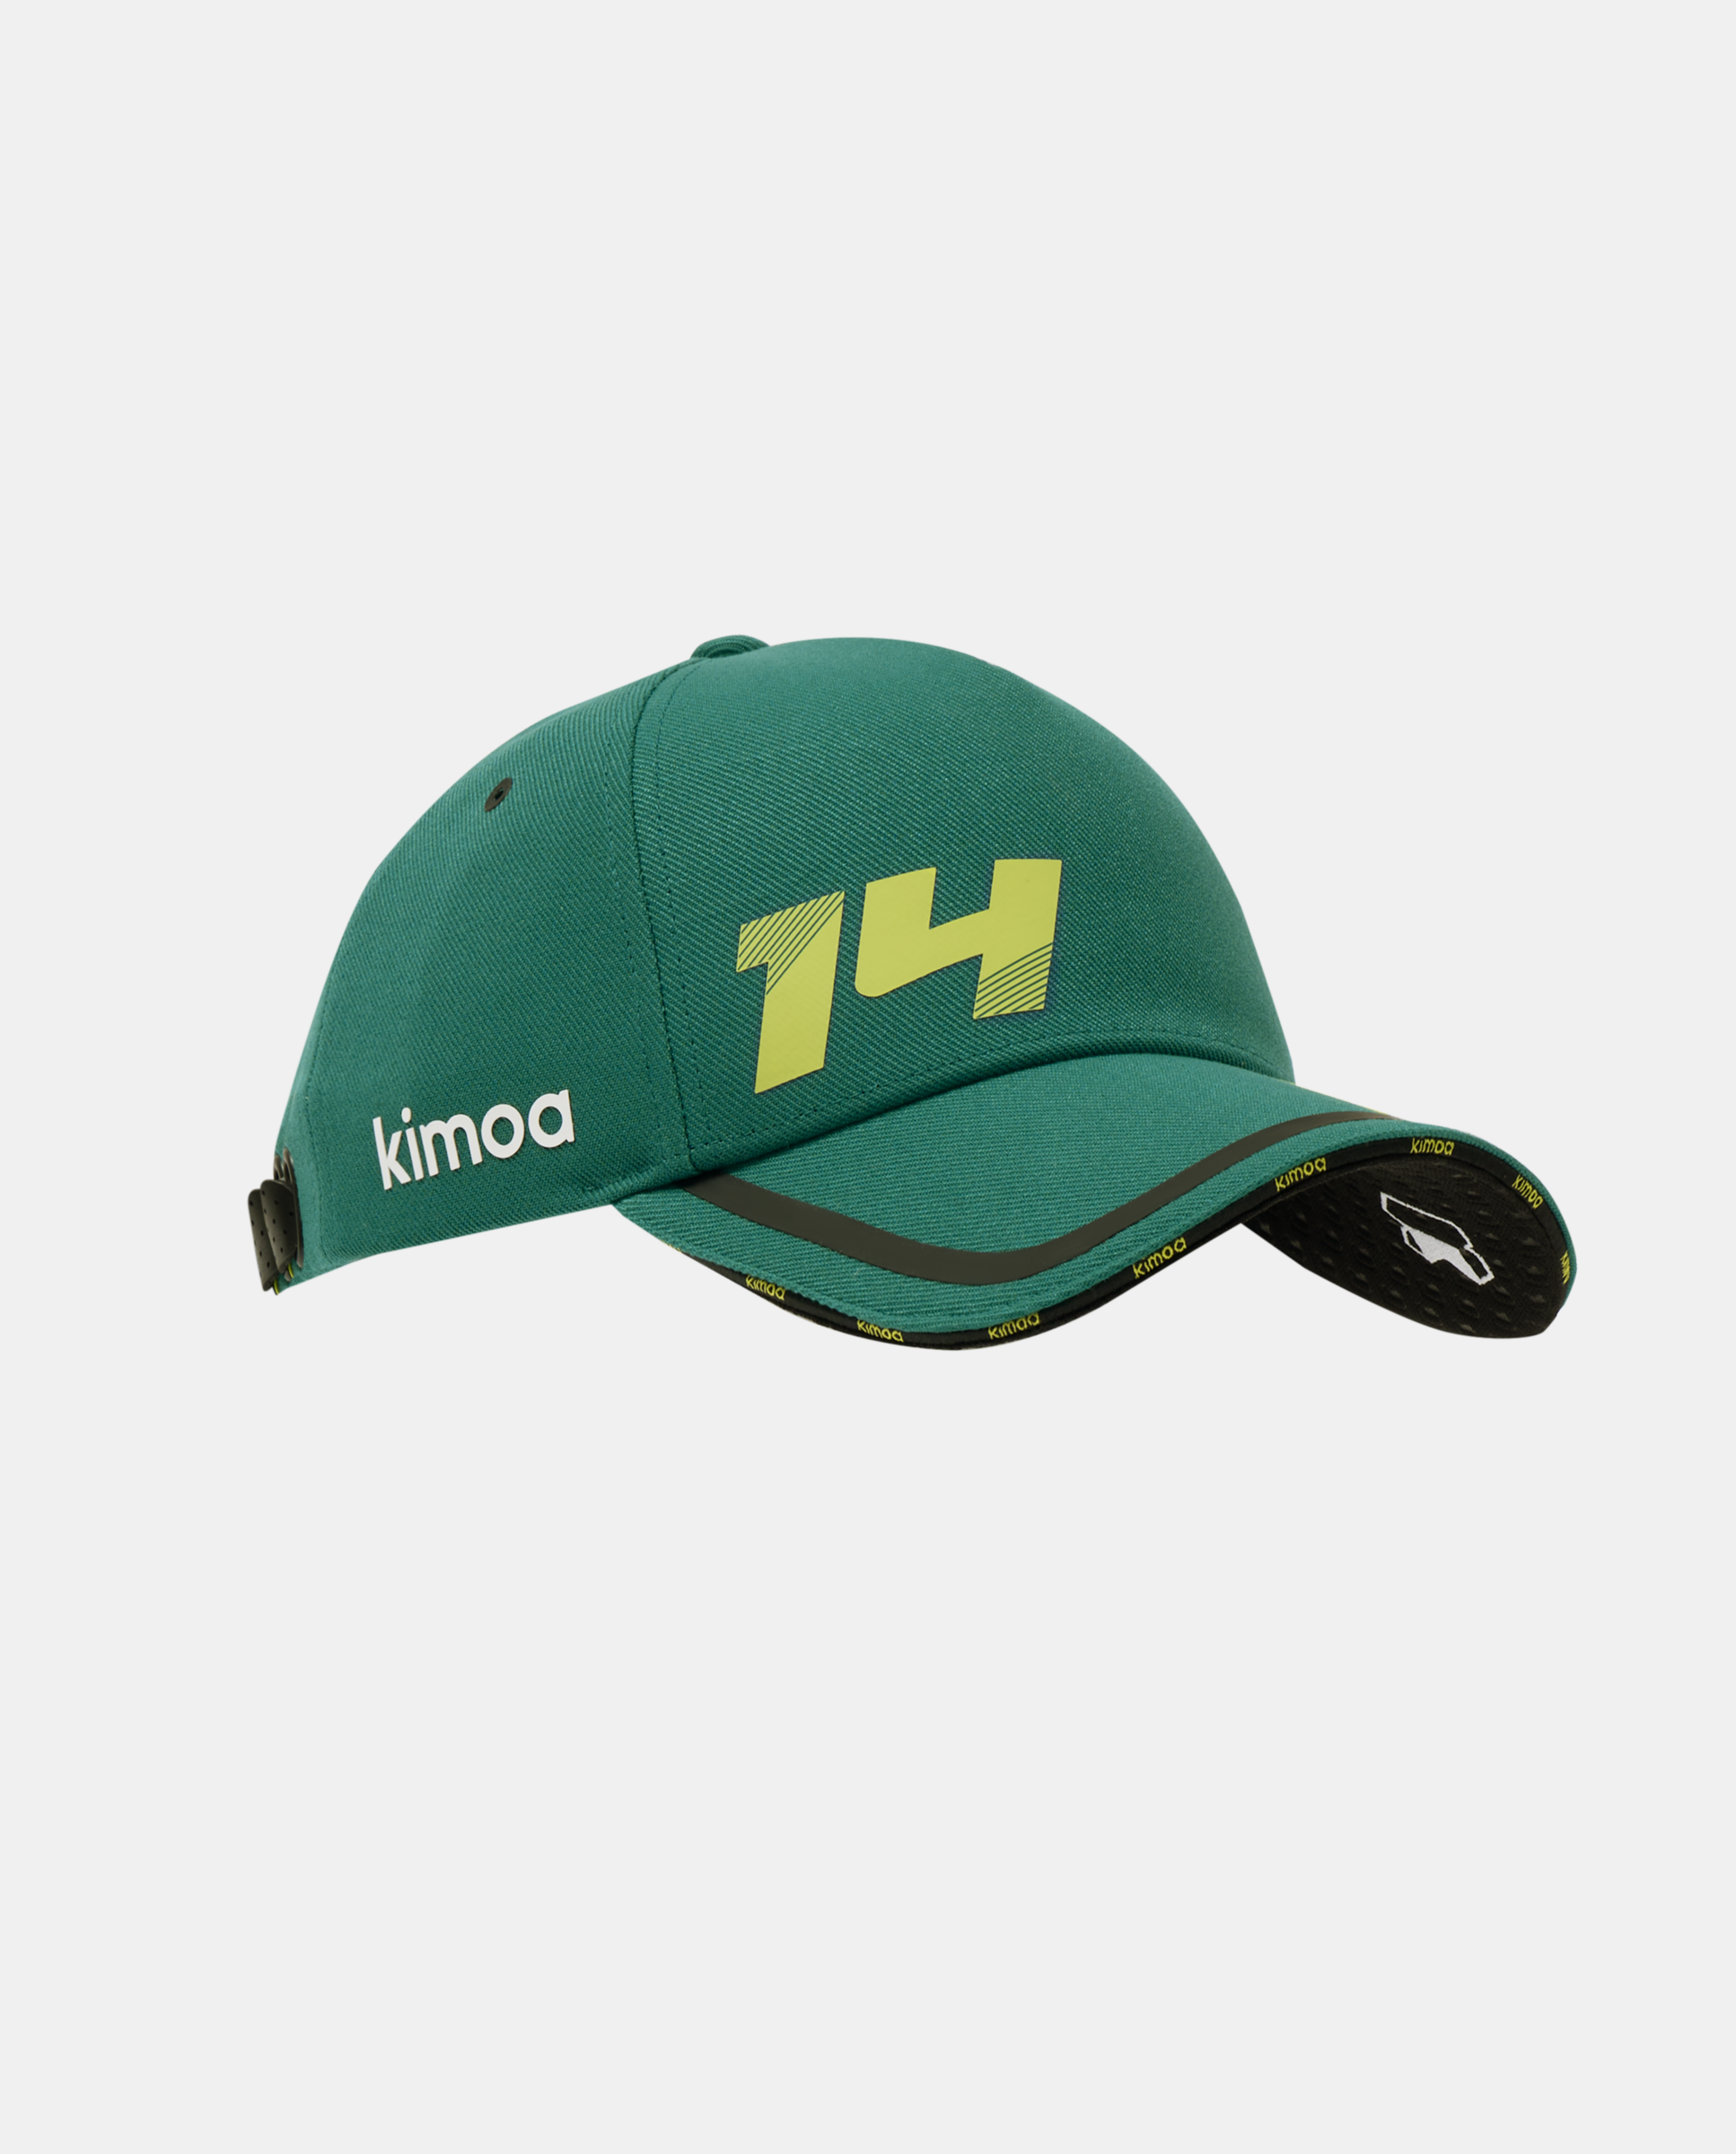 Aston Martin F1 Team x Kimoa 14 Tech Cap green